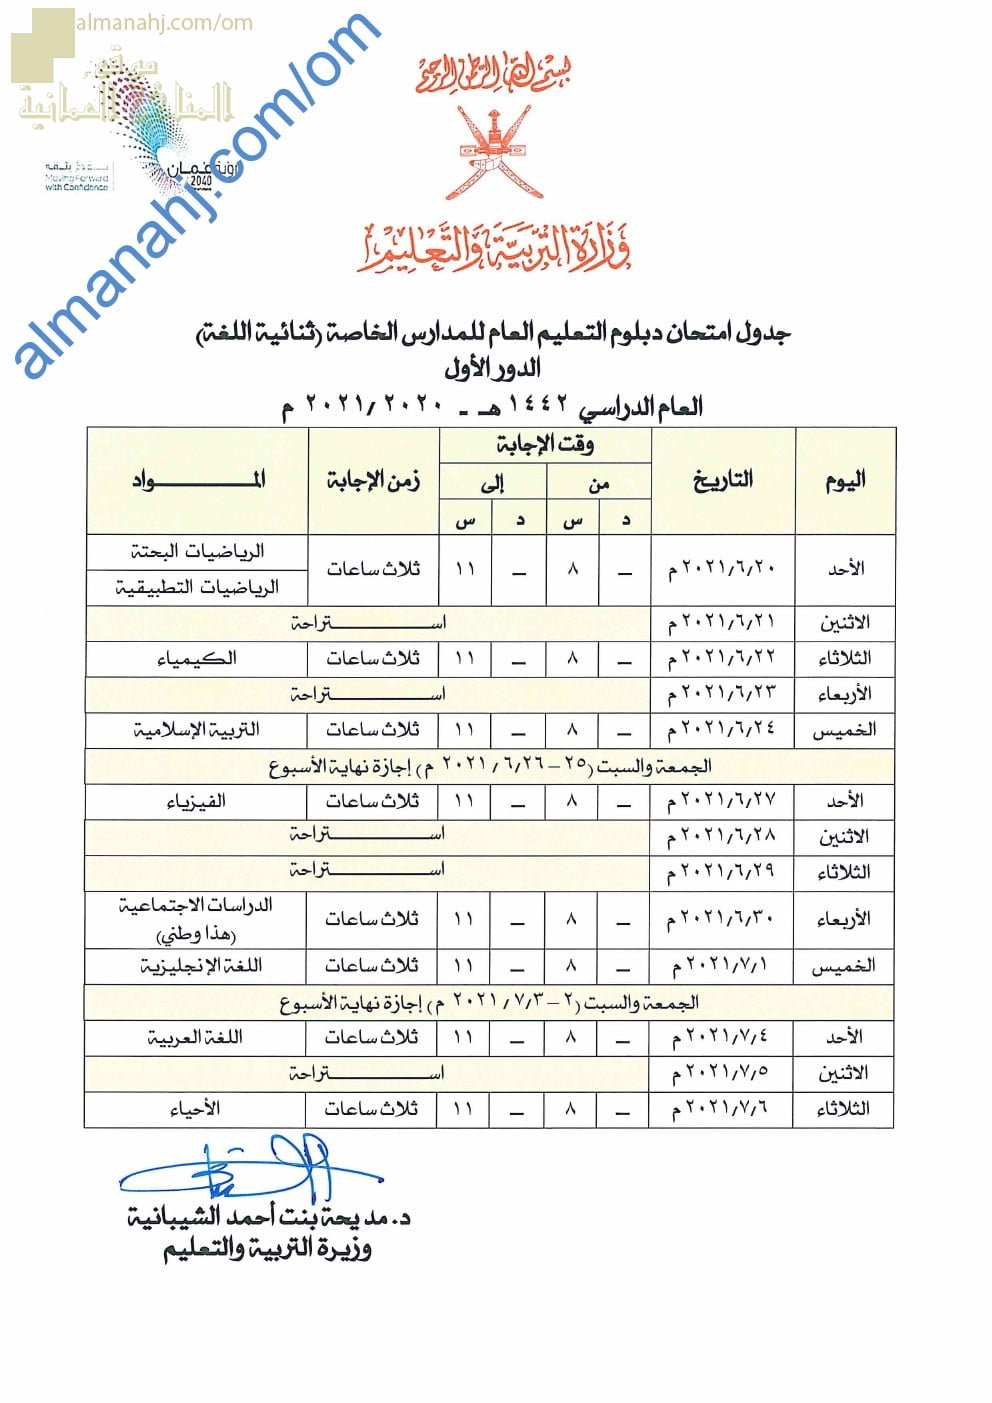 جدول امتحانات دبلوم التعليم العام للمدارس الخاصة (ثنائية اللغة) -الدور الأول (الامتحانات) الثاني عشر